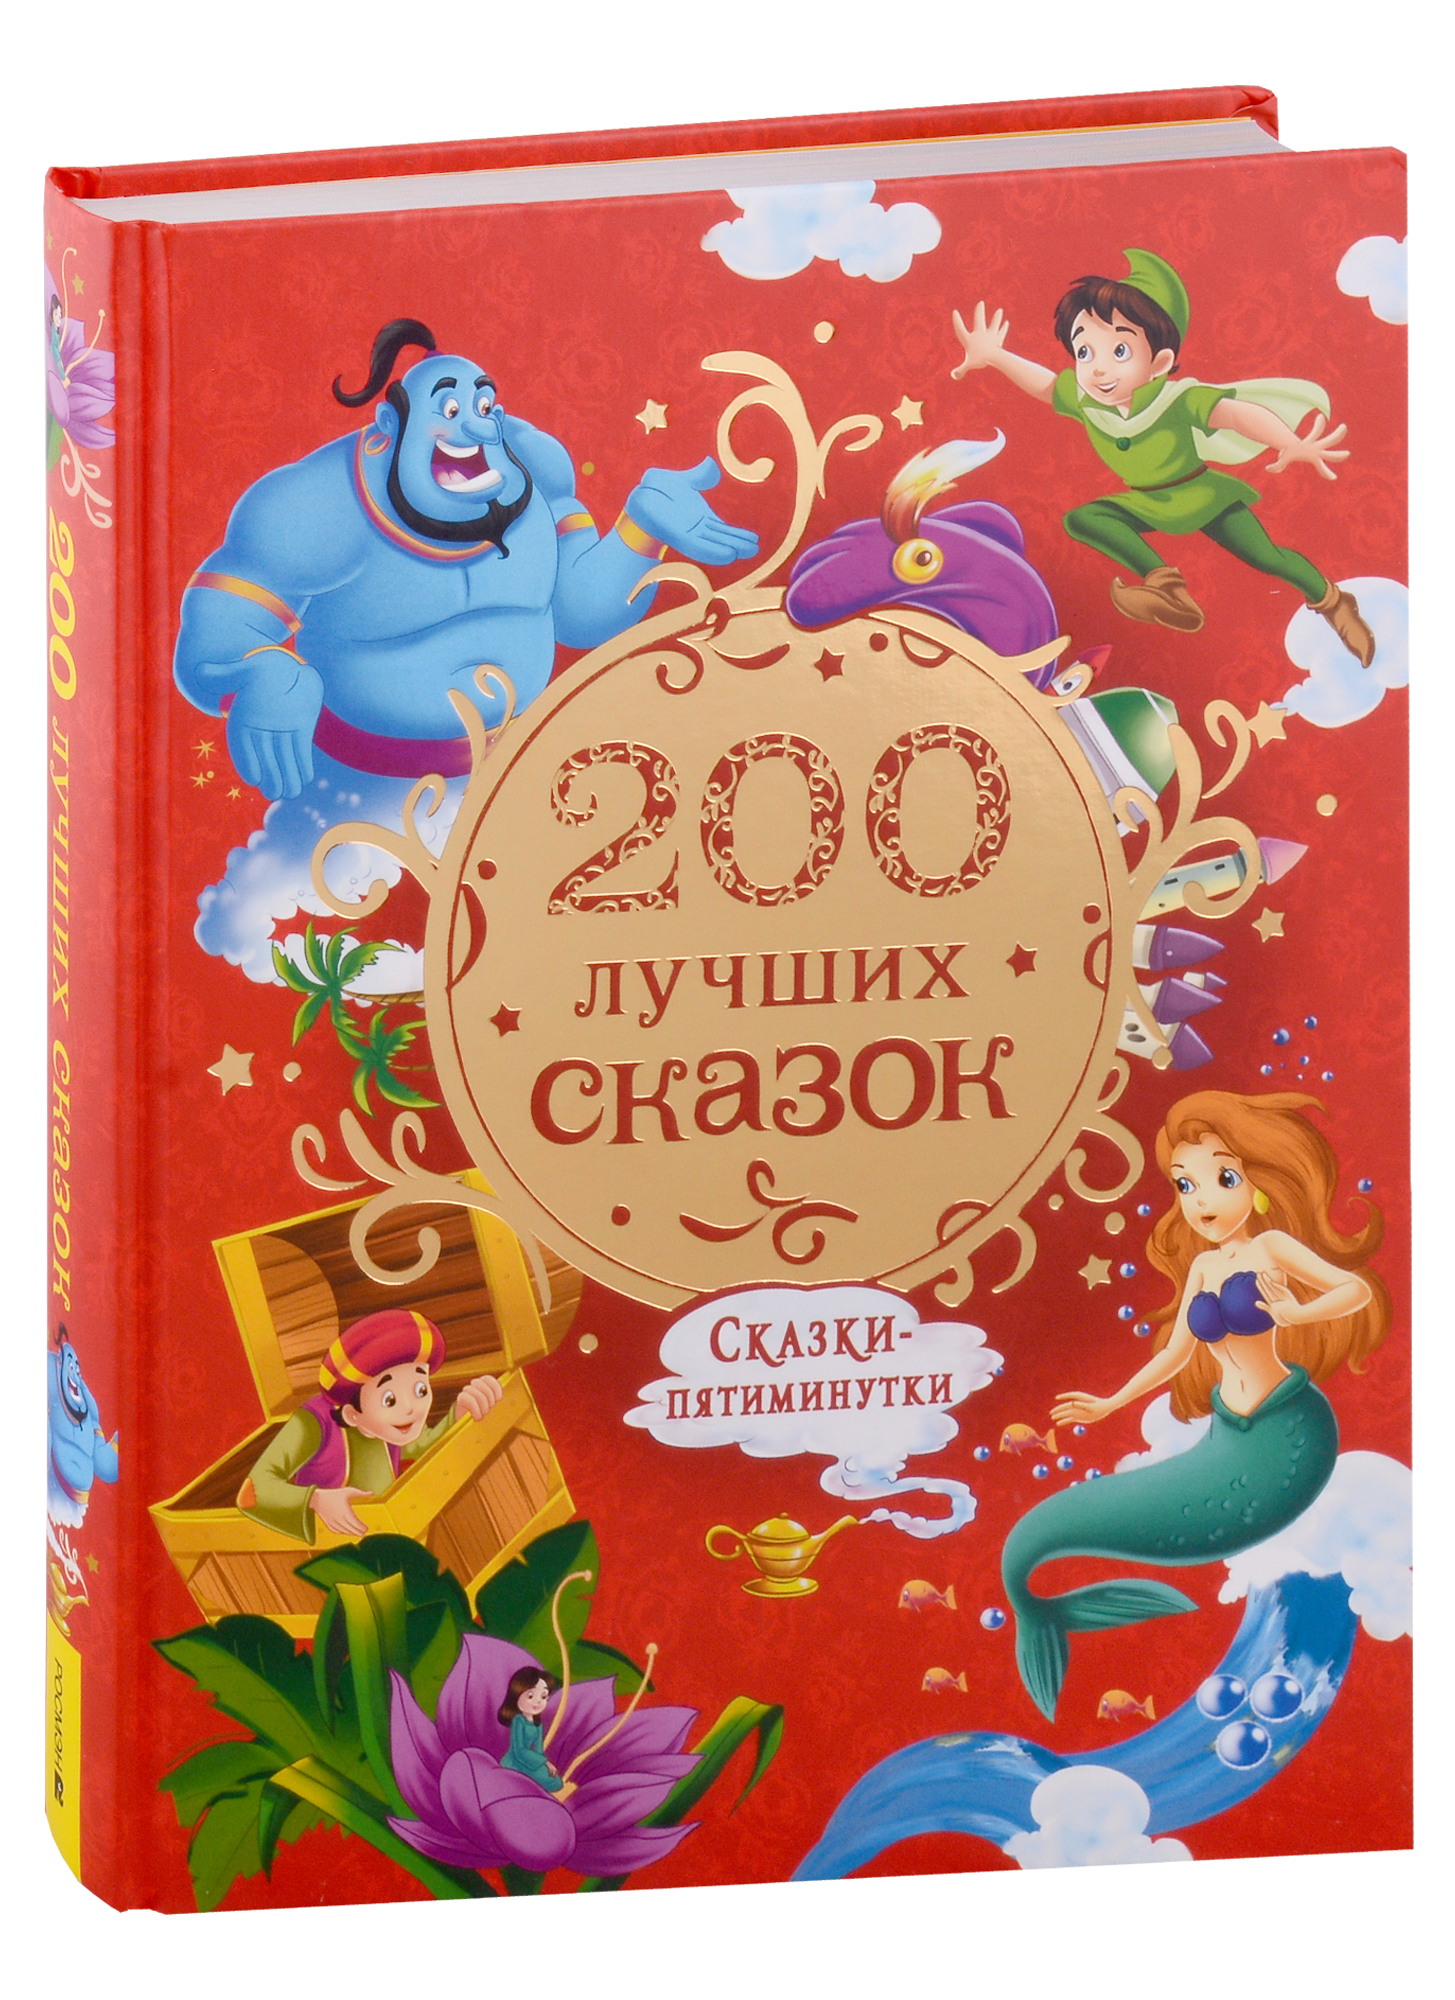 200 лучших сказок самая большая книга сказок пятиминуток 200 лучших сказок. Самая большая книга сказок-пятиминуток